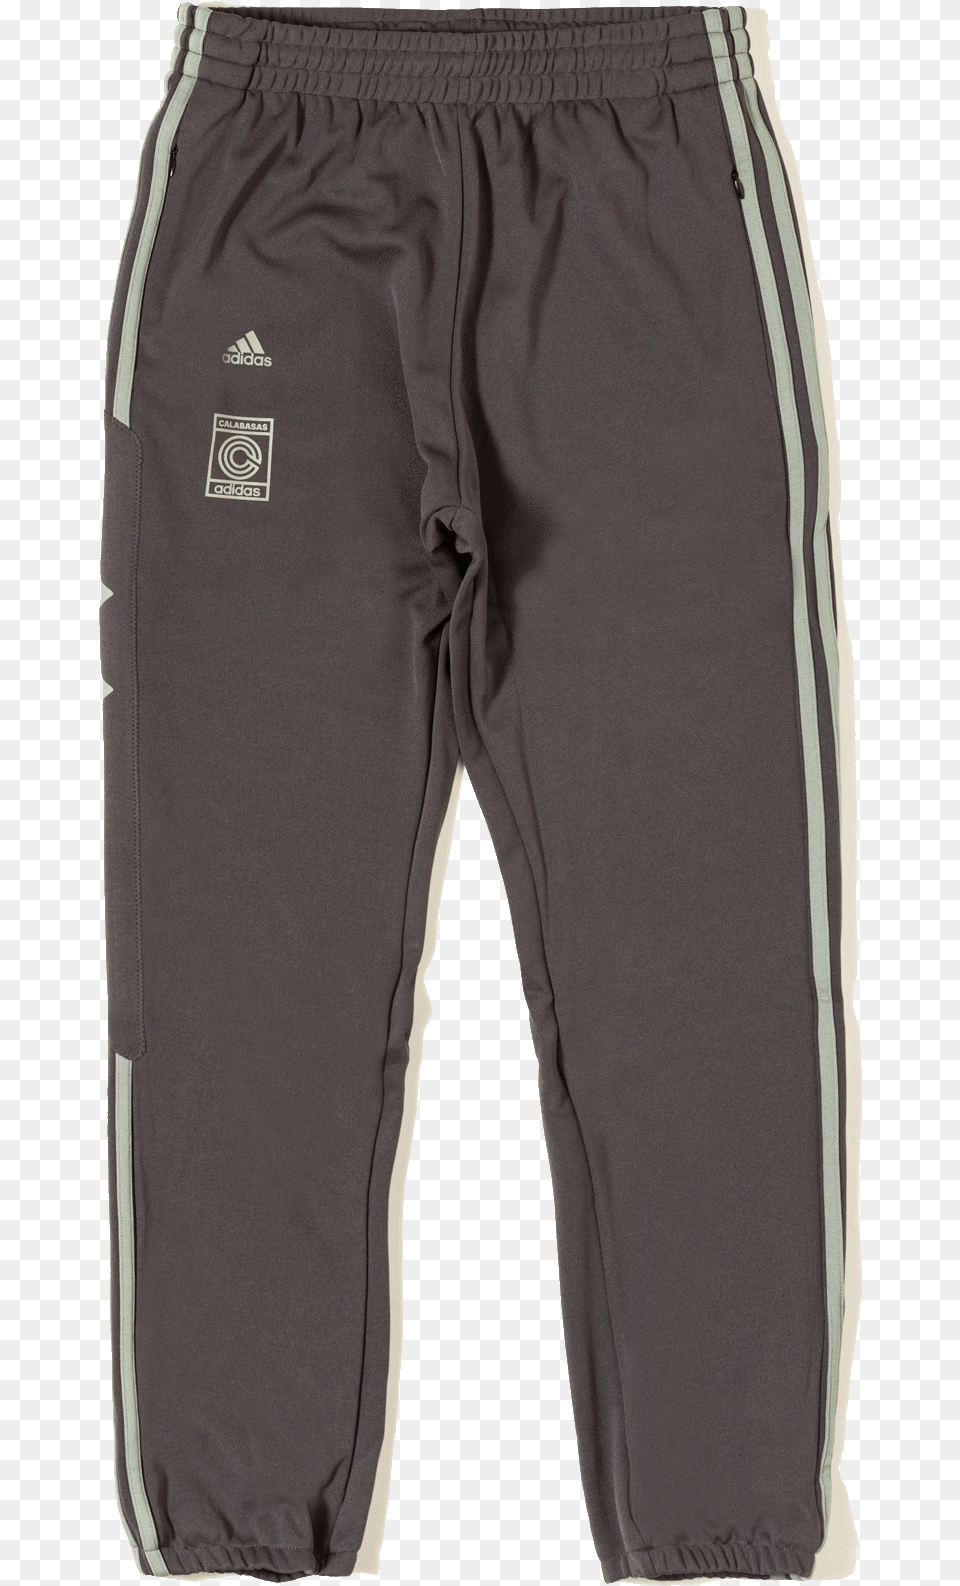 Pocket, Clothing, Pants, Shorts, Coat Png Image